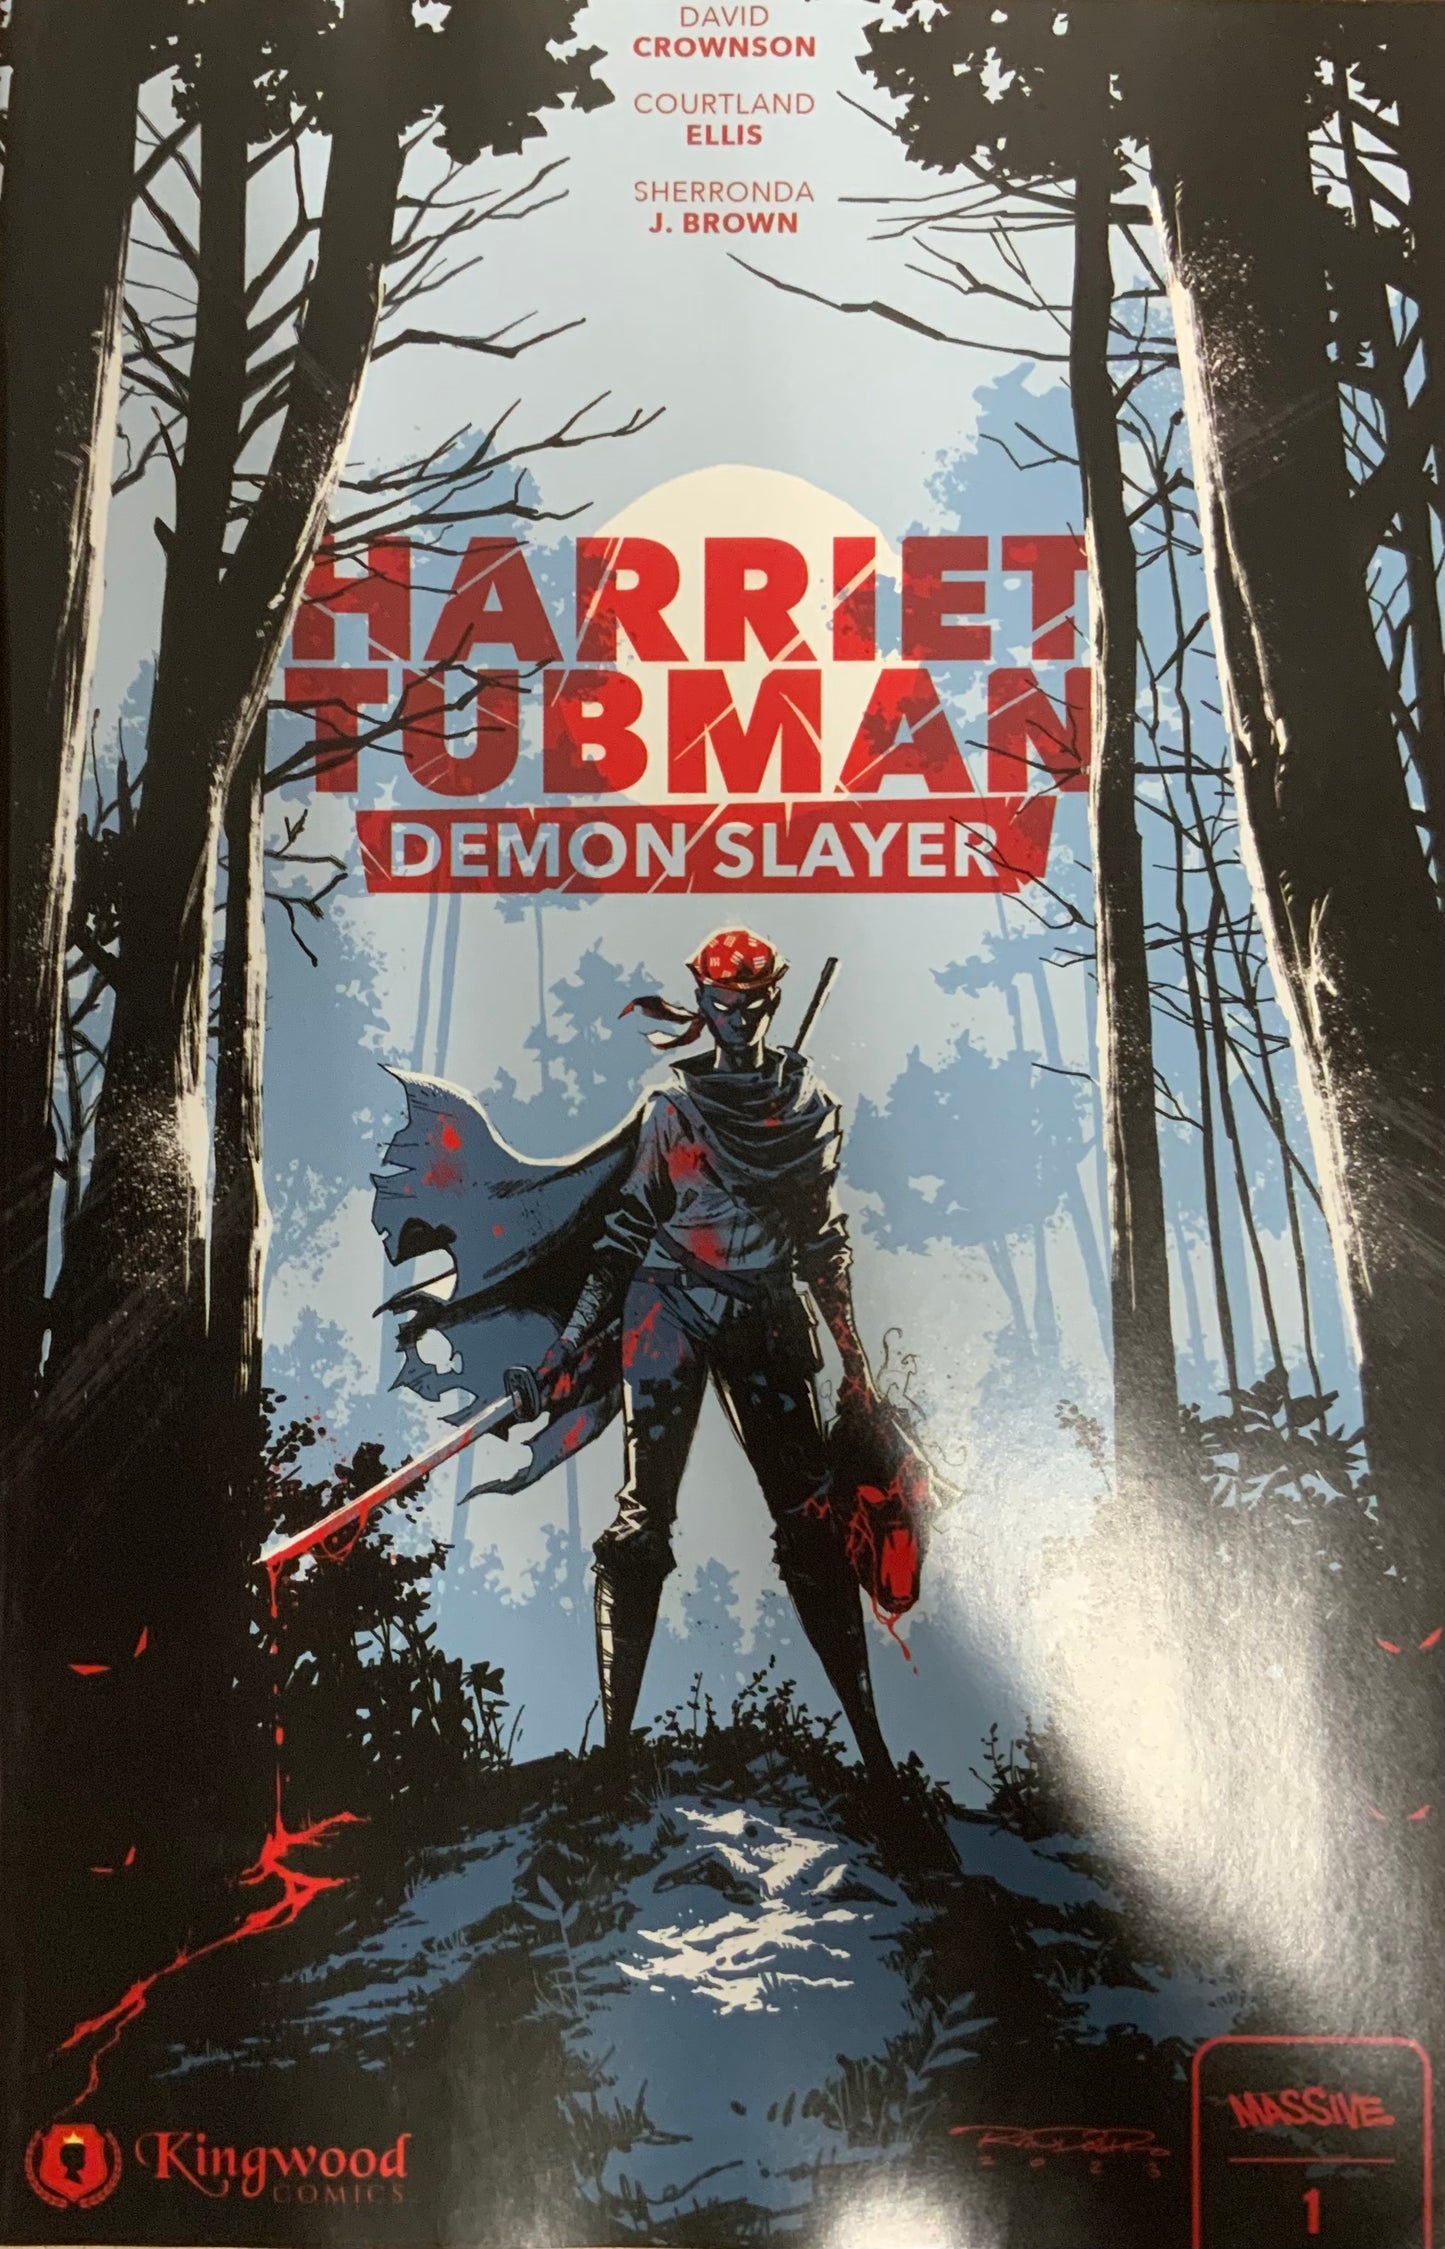 Harriet Tubman Demon Slayer issue 1